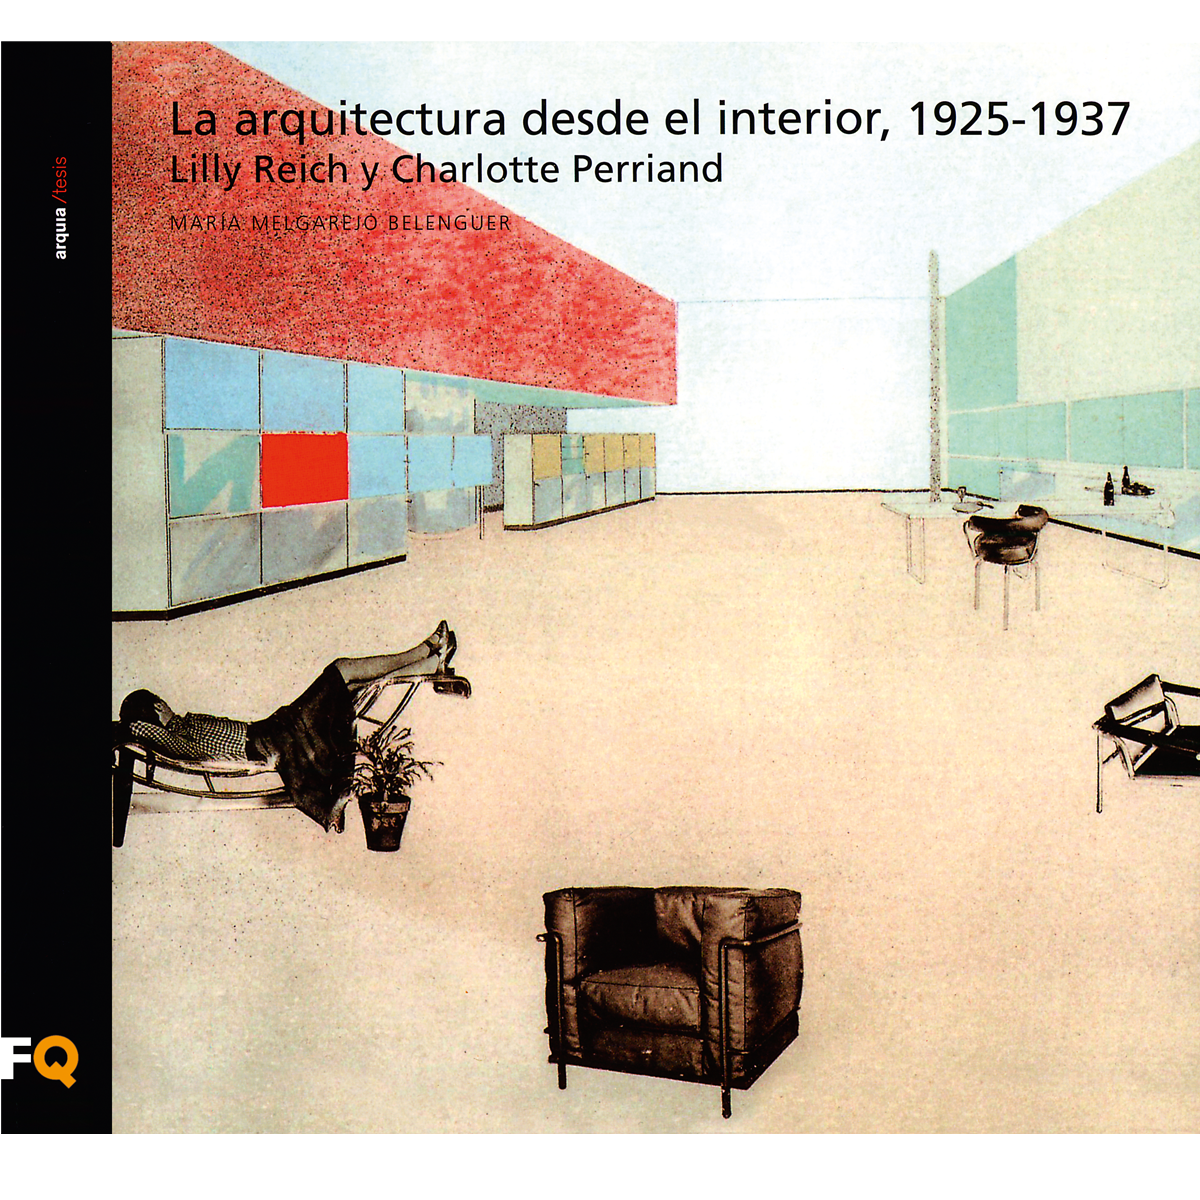 La arquitectura desde el interior, 1925-1937